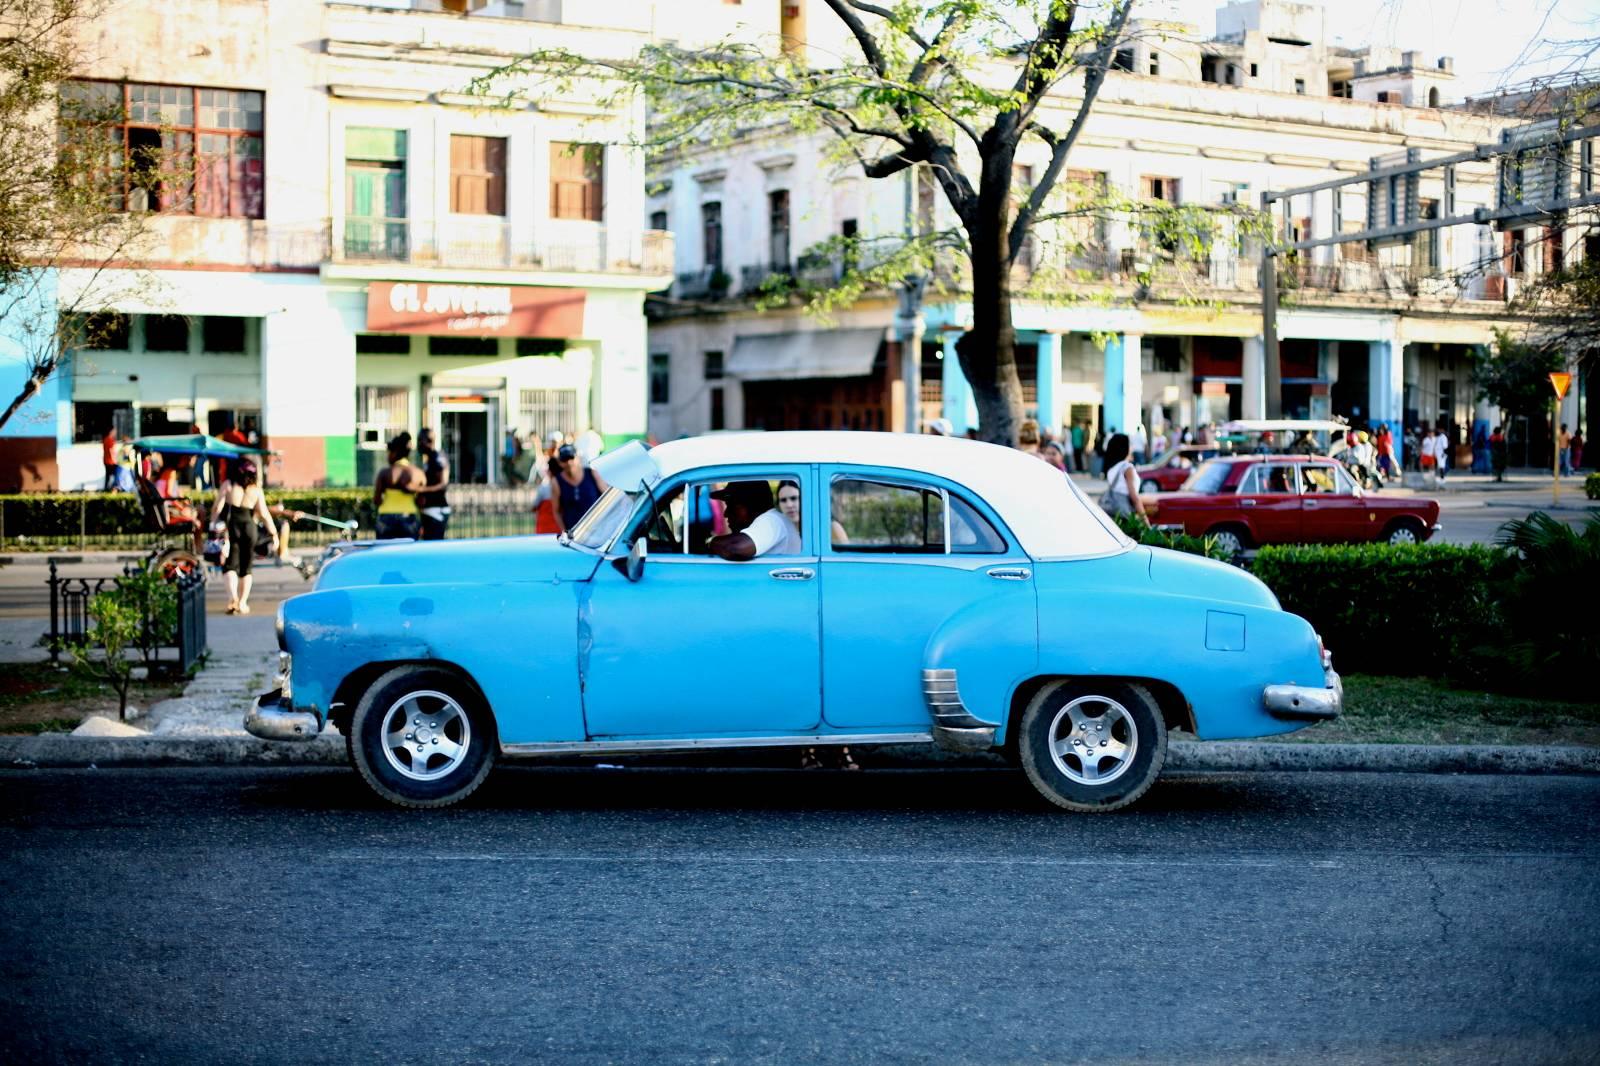 Geoff Reinhard Color Photograph - Taxi - Cuba